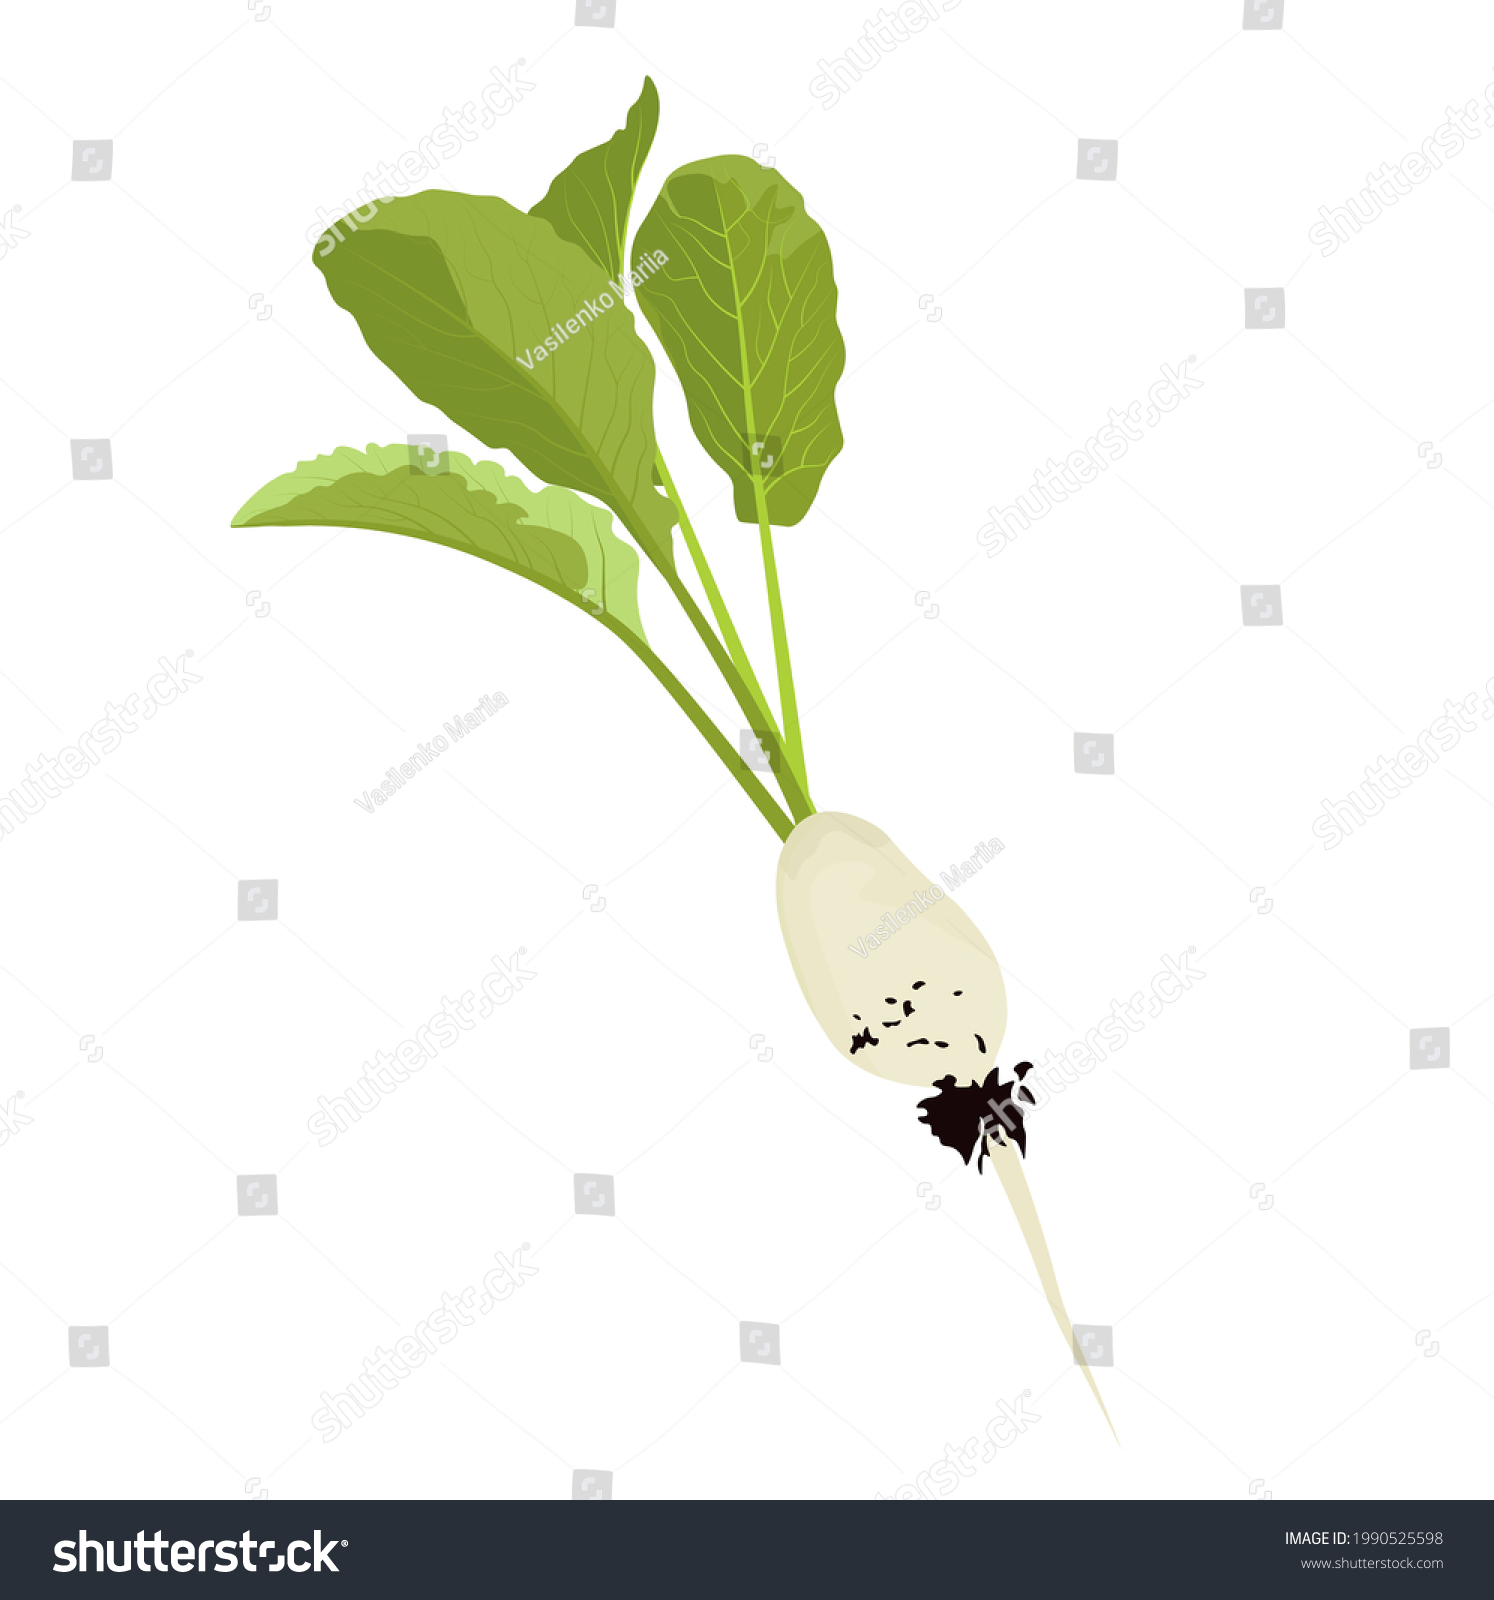 White radishes vector stock illustration. Mooli radish (daikon) plants and roots, mooli kumbong variety. Chinese radish. Isolated on a white background. #1990525598